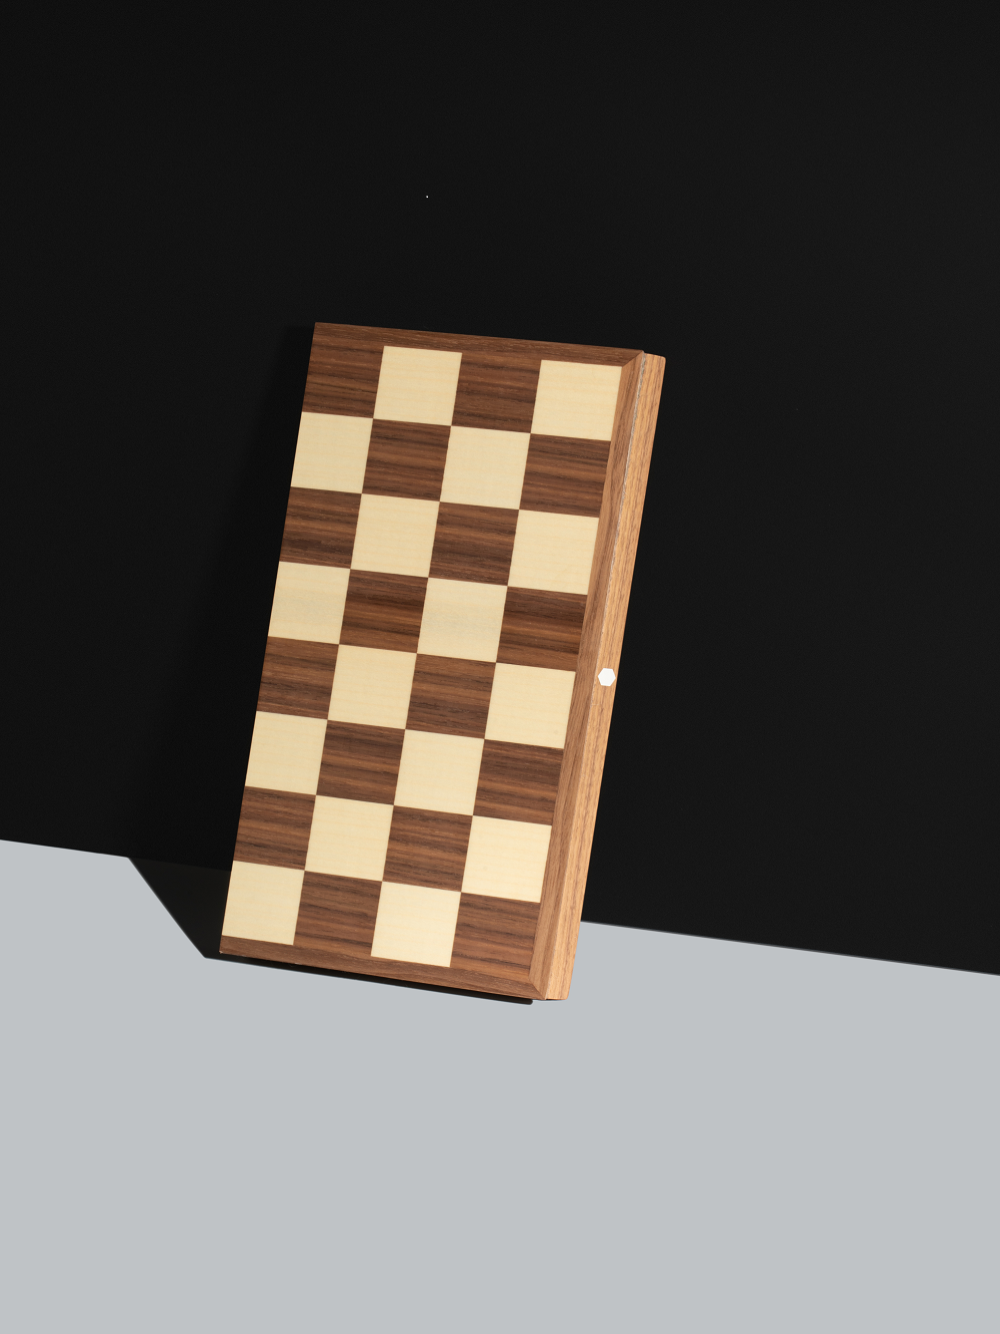 Folding Wood International Chess Board Game International Chess